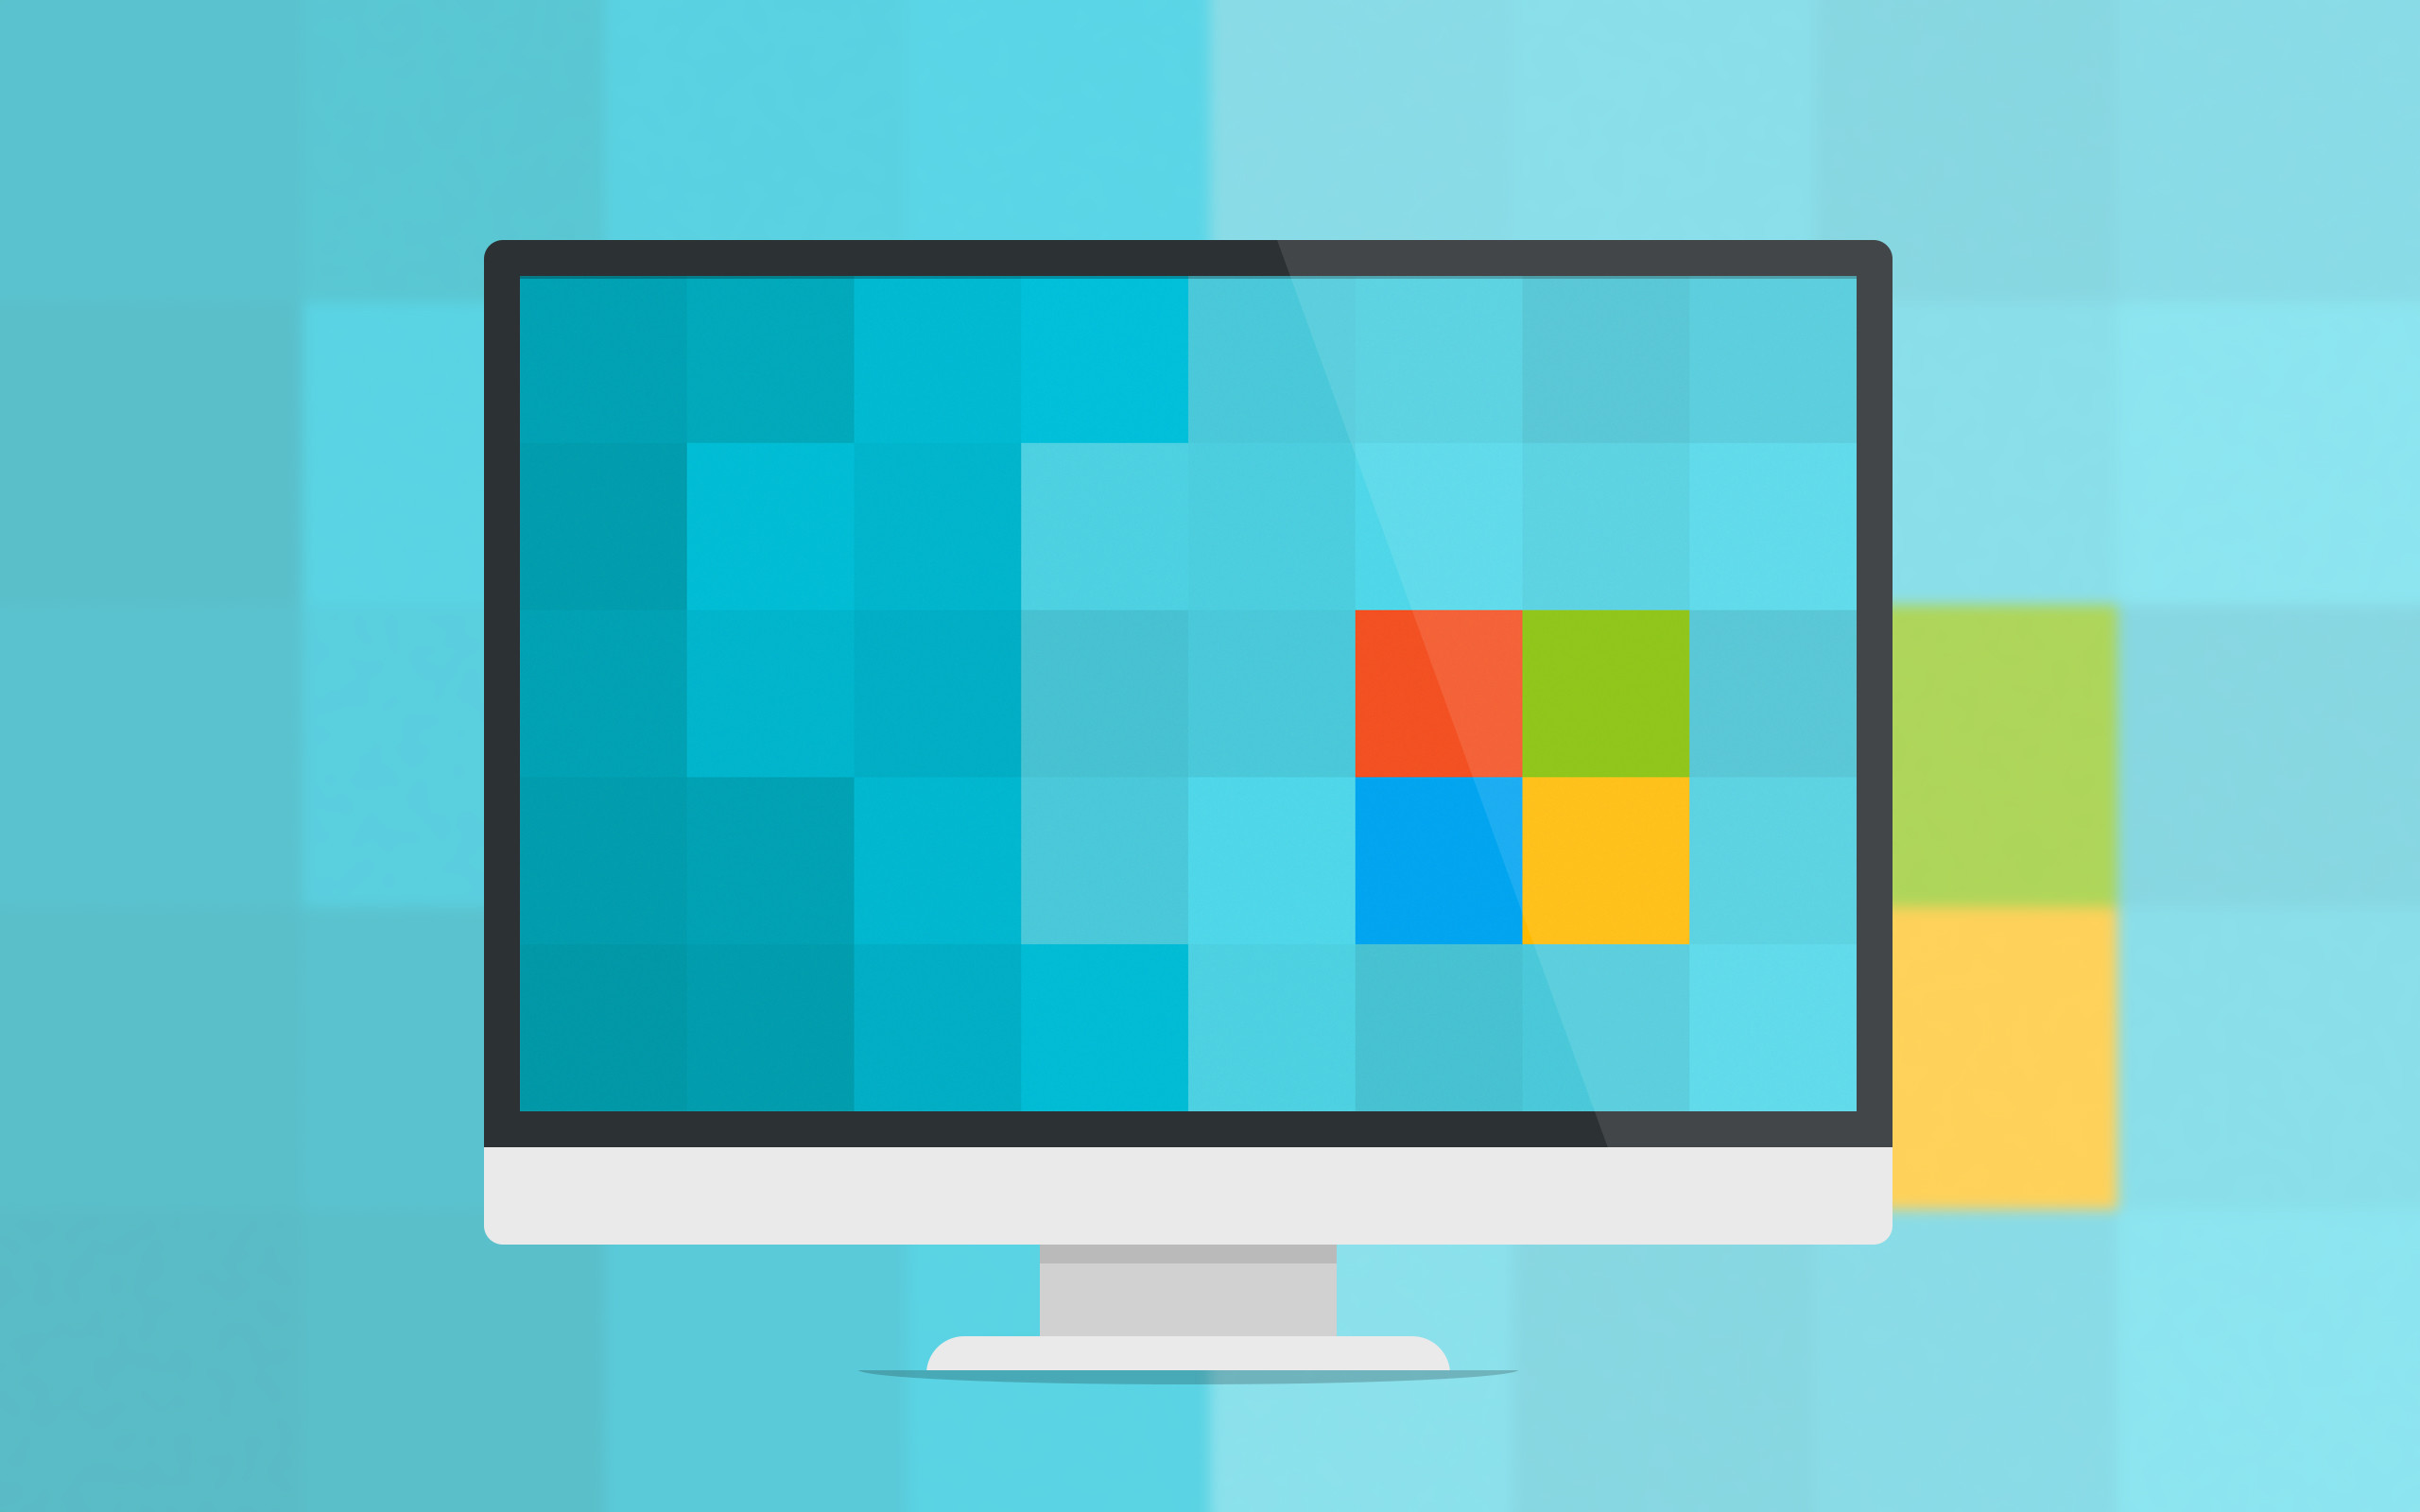 2560x1600 Minimalist Windows 10 Wallpaper - WallpaperSafari